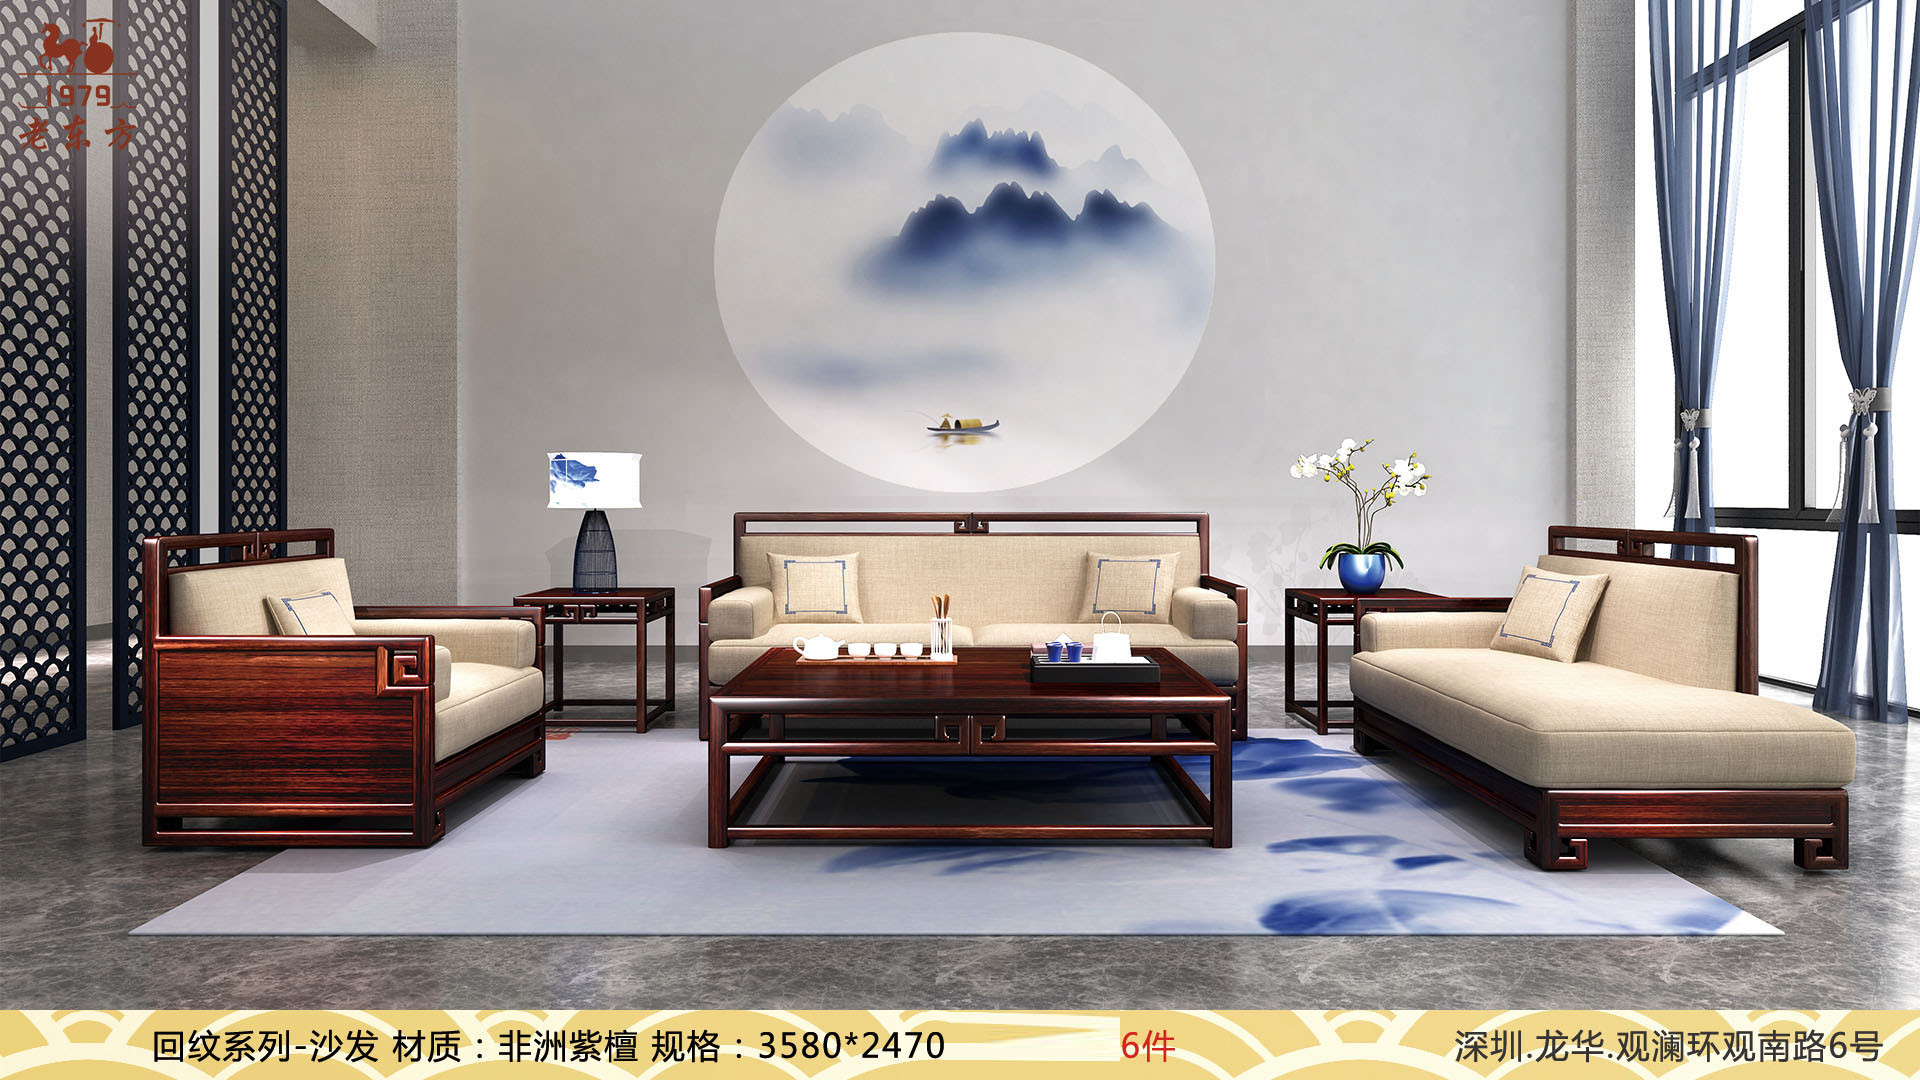 26回纹 系列-沙发   材质：非洲紫檀     规格：35802470   6件